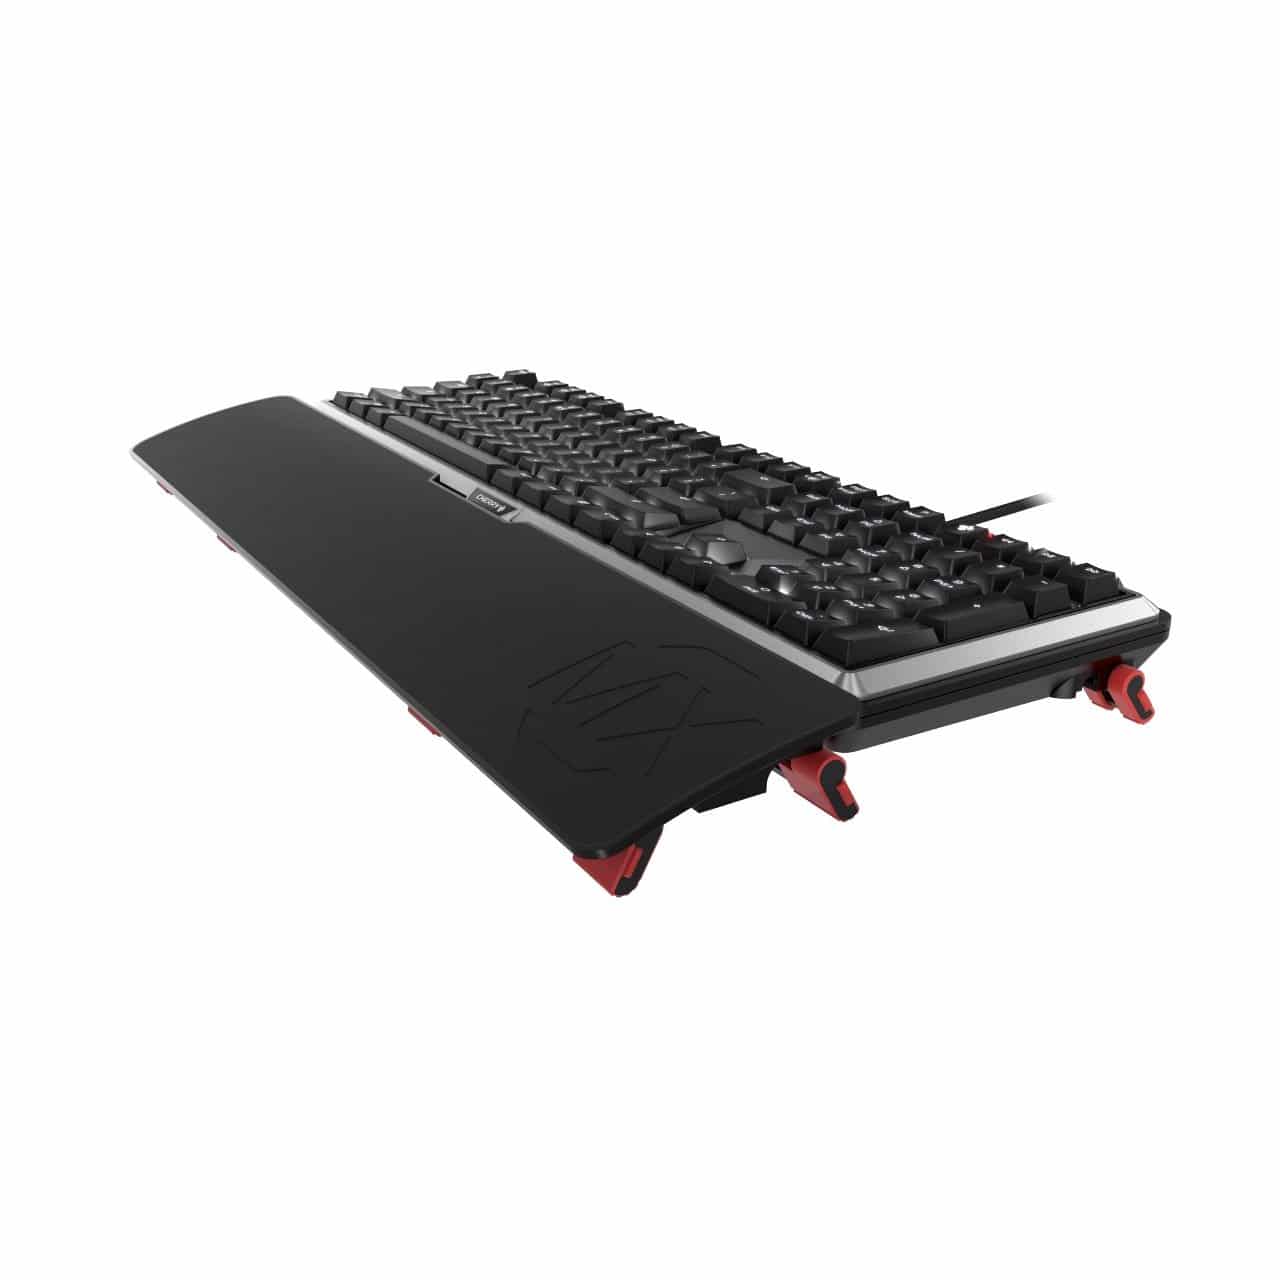 Image 6 : Cherry MX Board 5.0 : clavier mécanique silencieux et ergonomique pour gamers